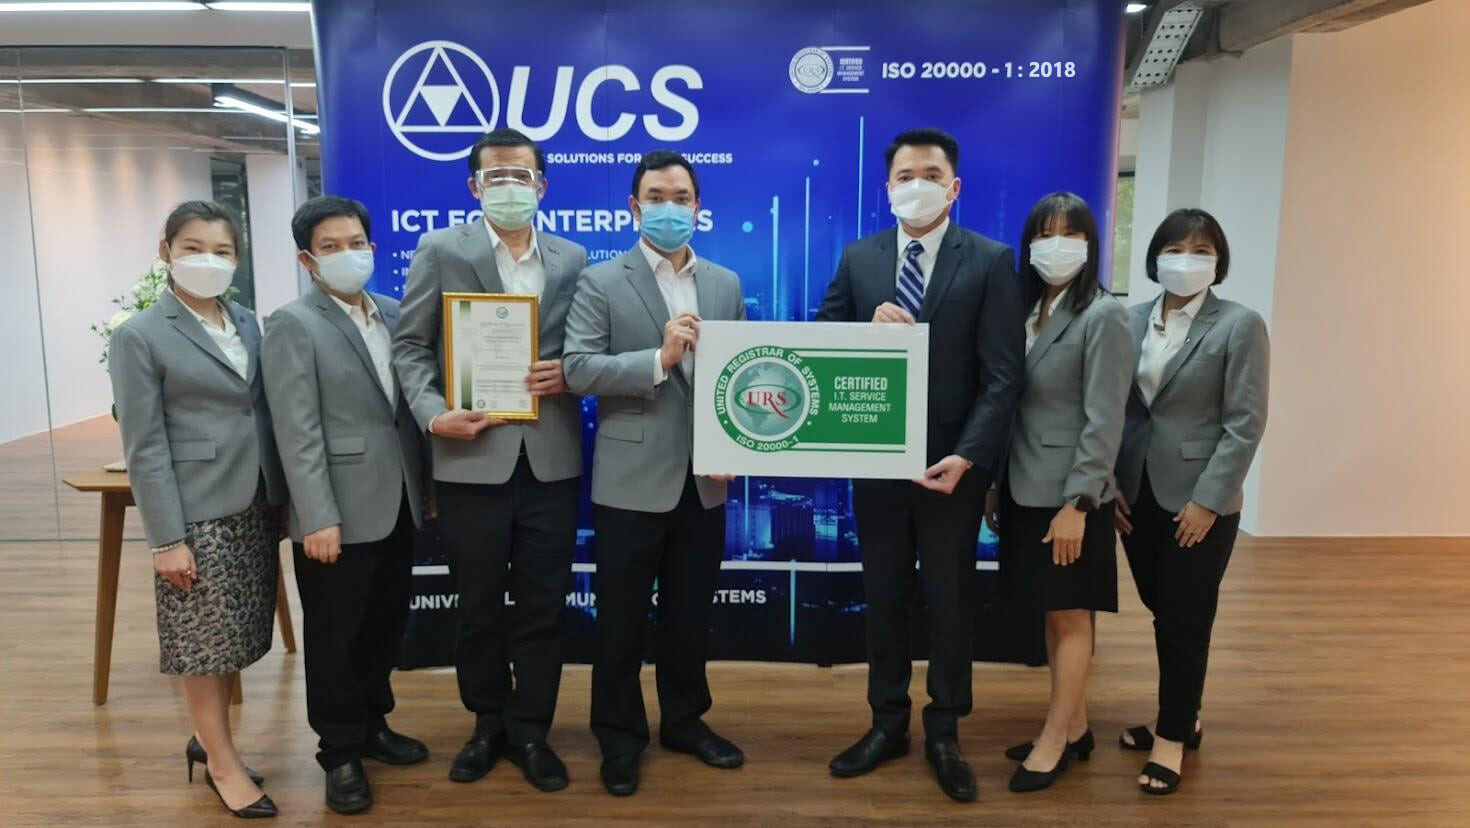 UCS ได้รับการการรับรองมาตรฐาน ISO 20000-1:2018 ติดต่อกันเป็นปีที่ 2